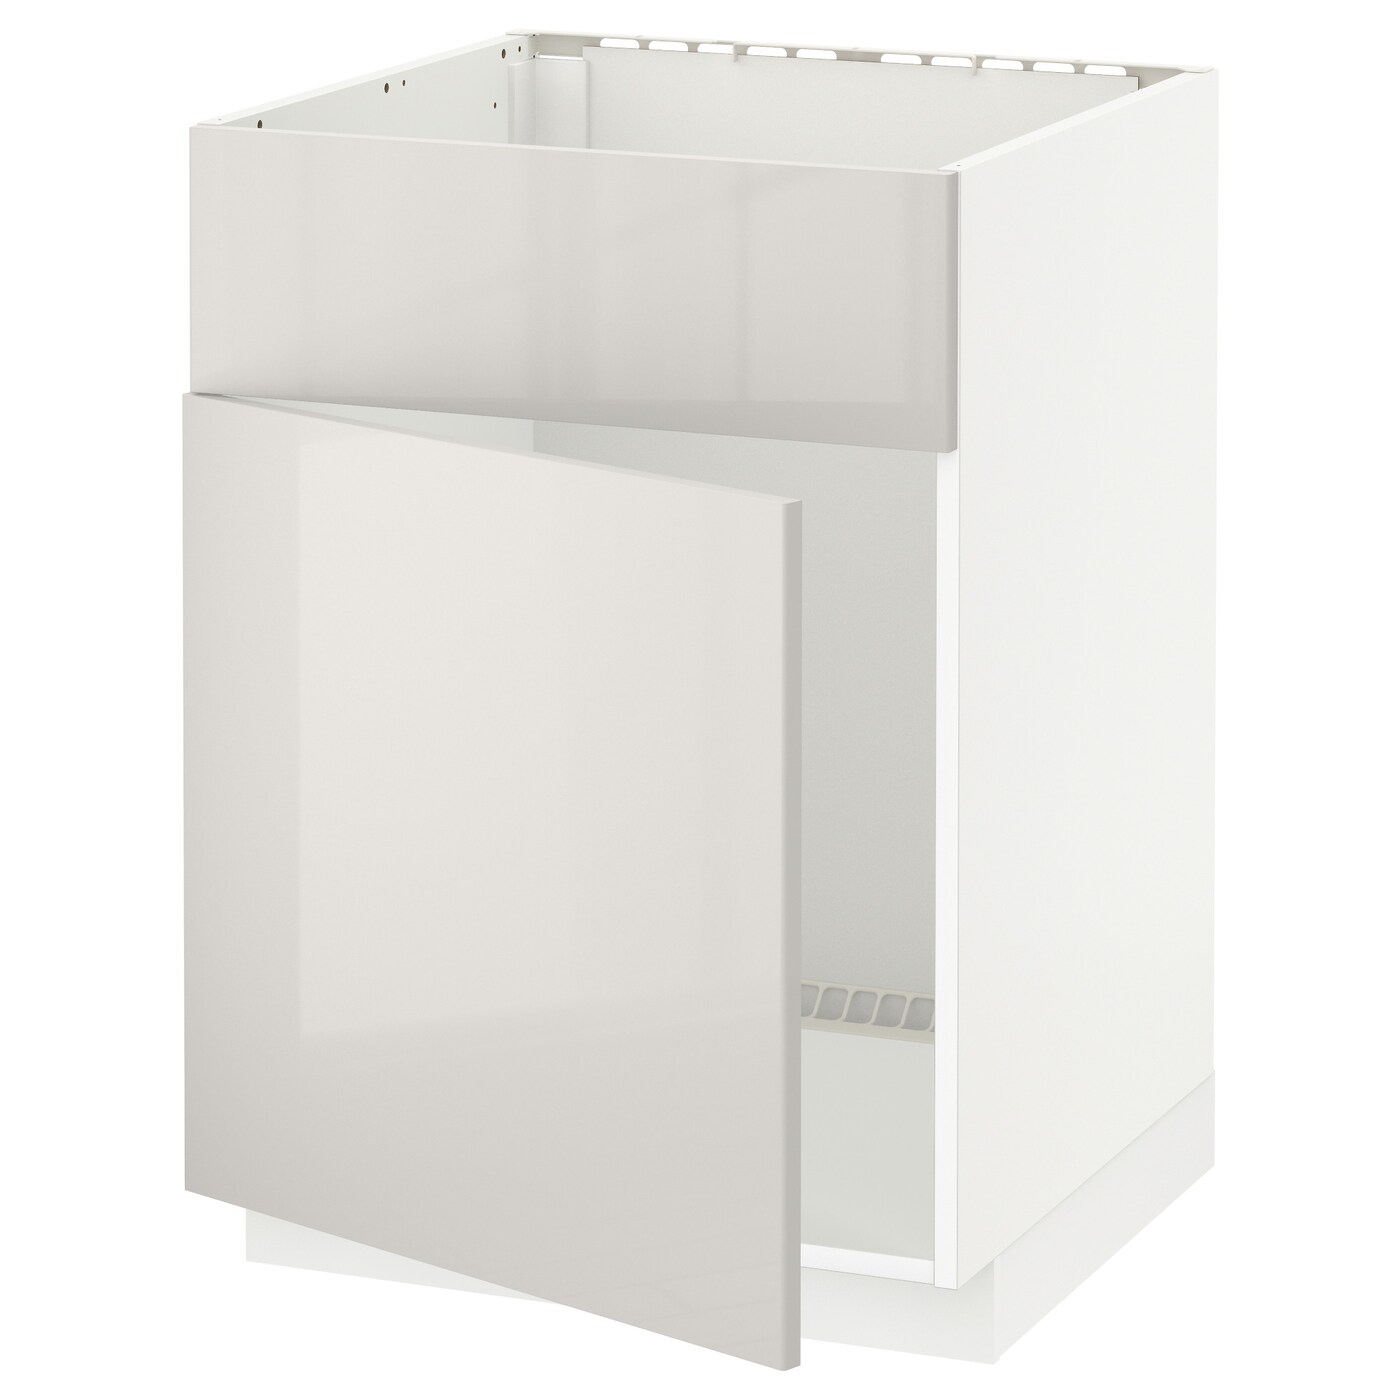 Напольный шкаф - IKEA METOD, 88x62x60см, белый/светло-бежевый, МЕТОД ИКЕА